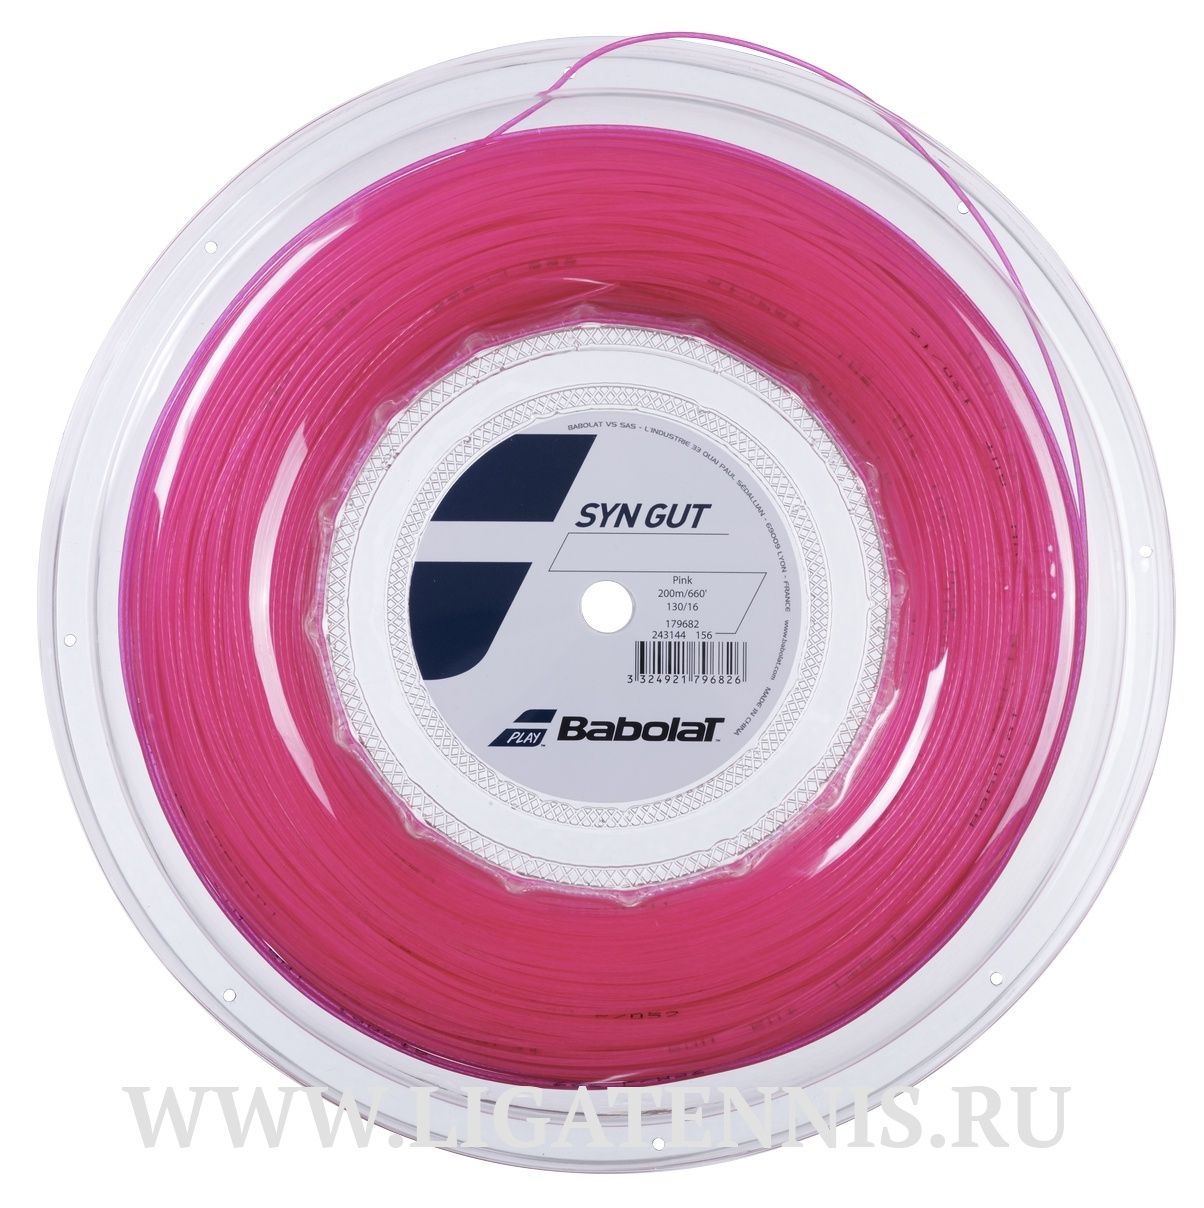 картинка Теннисная струна Babolat Syn Gut Pink Бобина 200 метров от магазина Высшая Лига